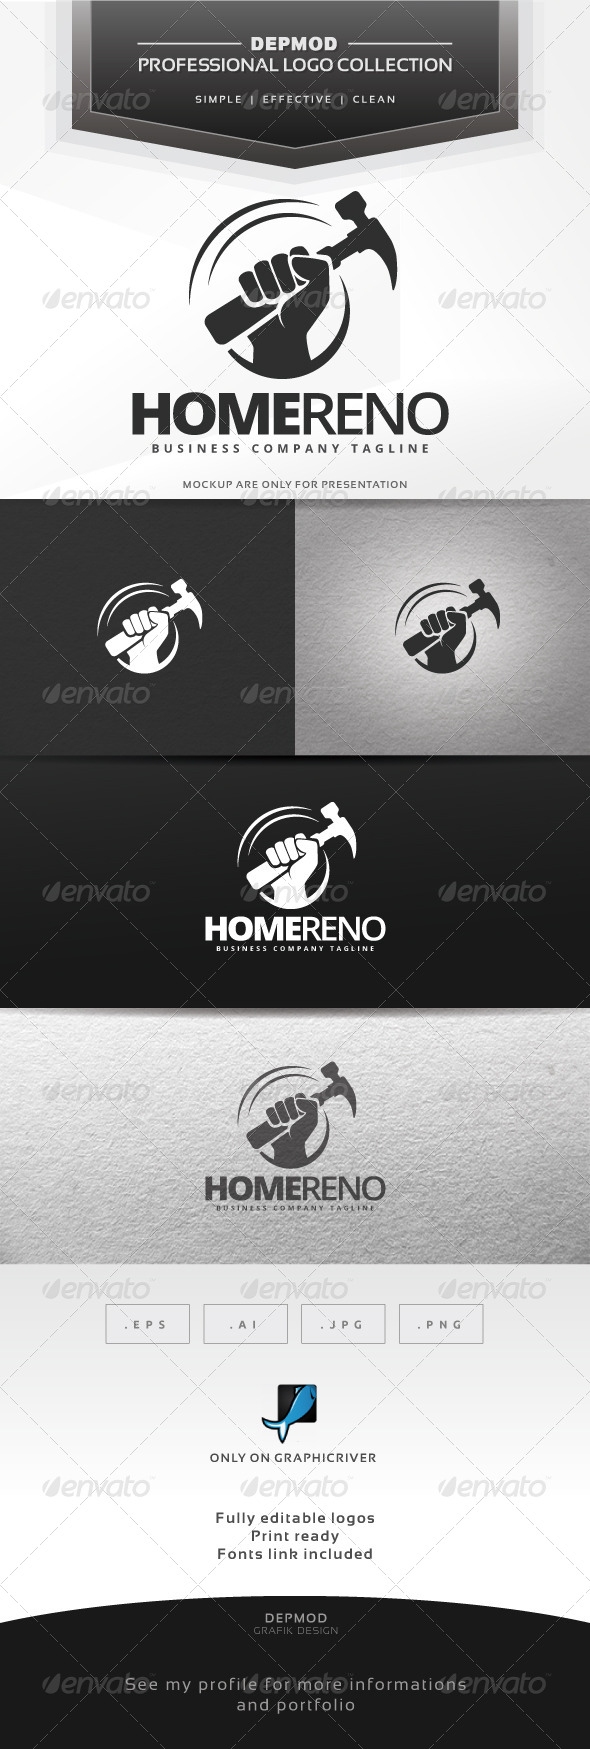 Home Reno Logo